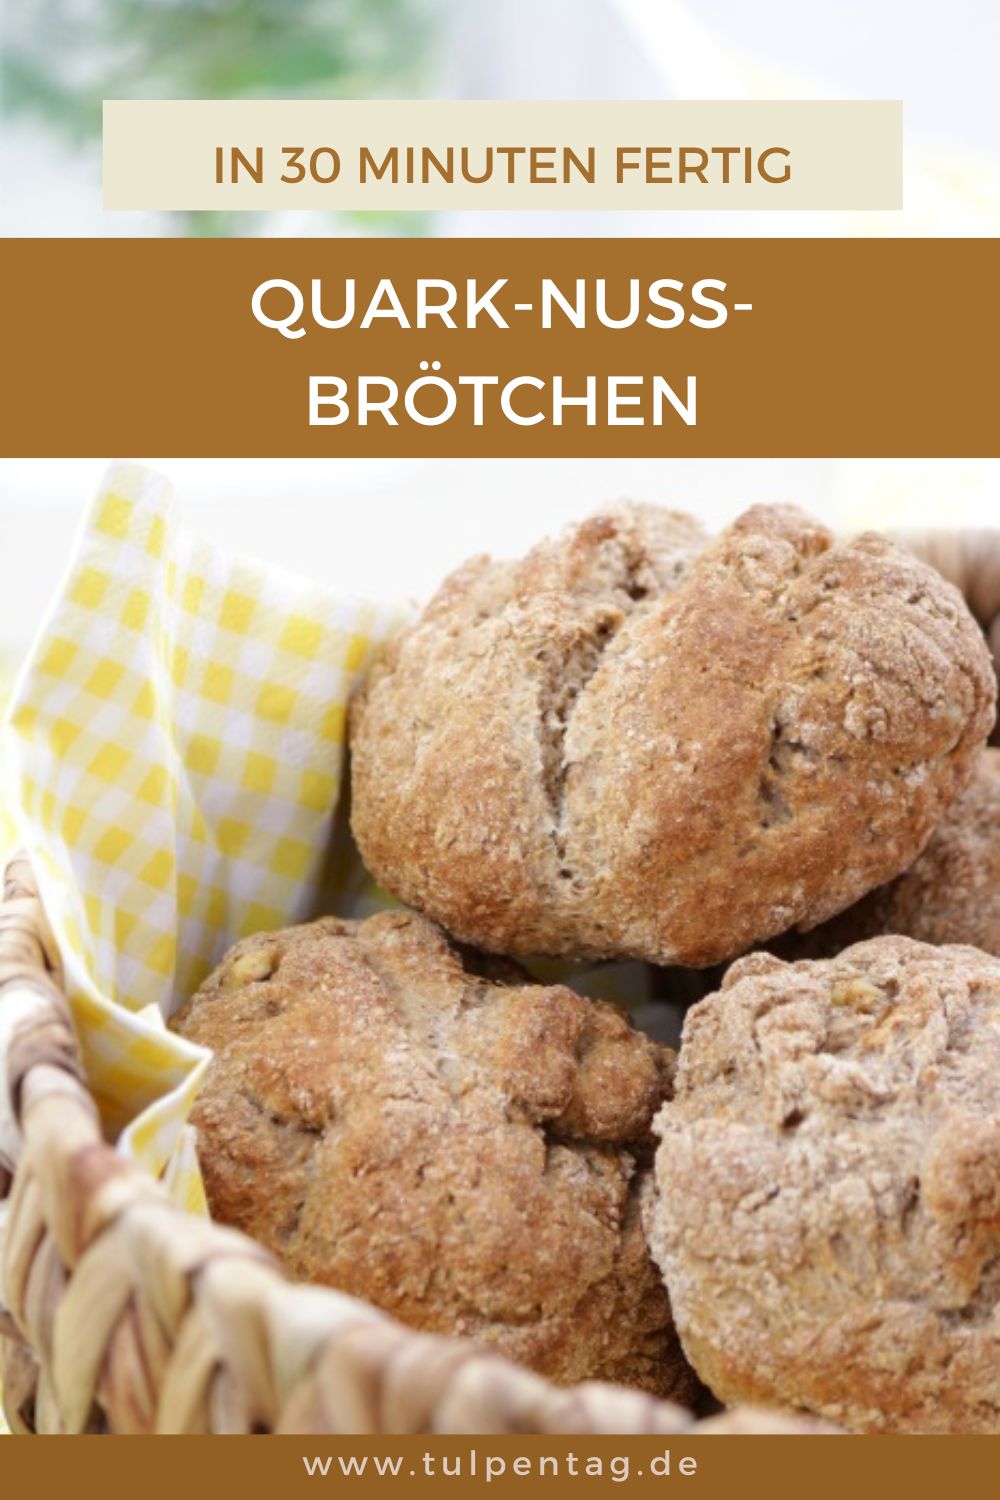 Brötchen mit Quark und Nüssen in nur 30 Minuten. Einfaches und schnelles Rezept, um Brötchen selber zu backen.